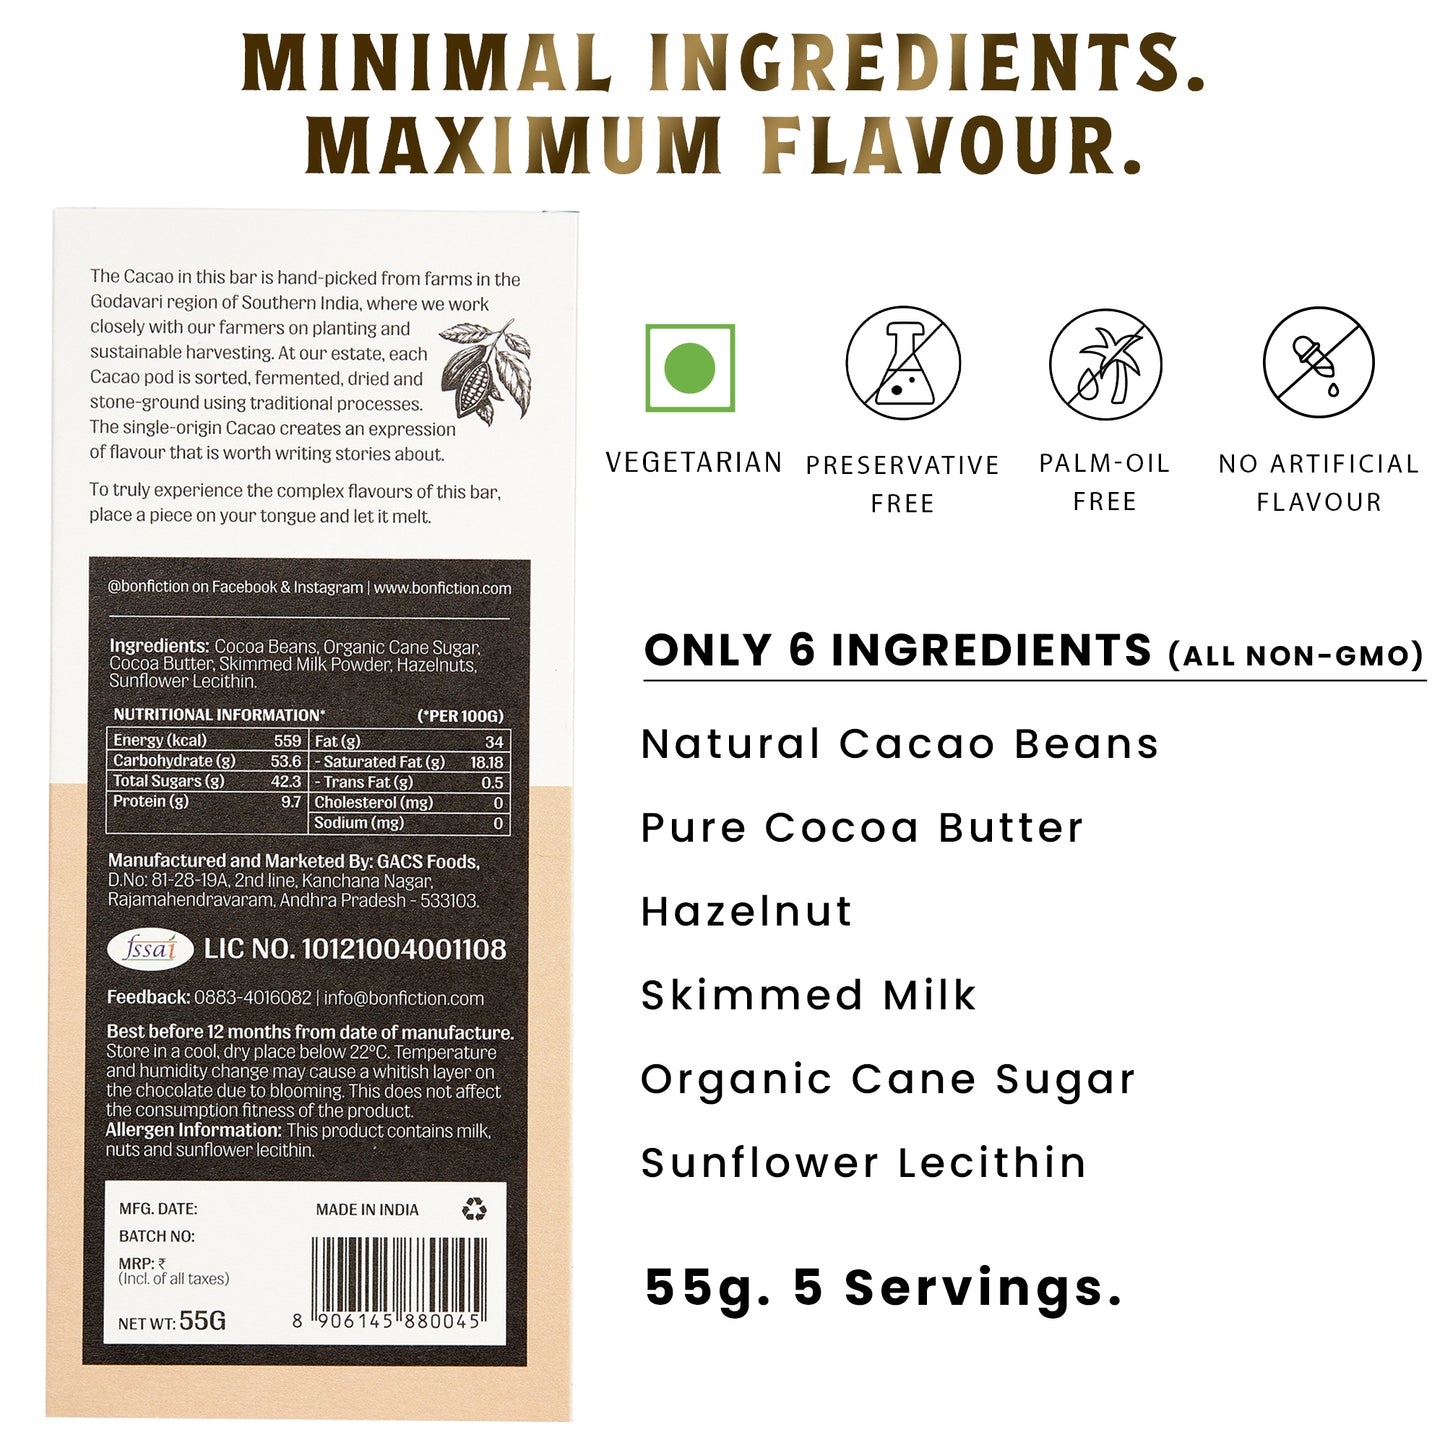 The Hazelnut Hour - 45% Milk Hazelnut Chocolate